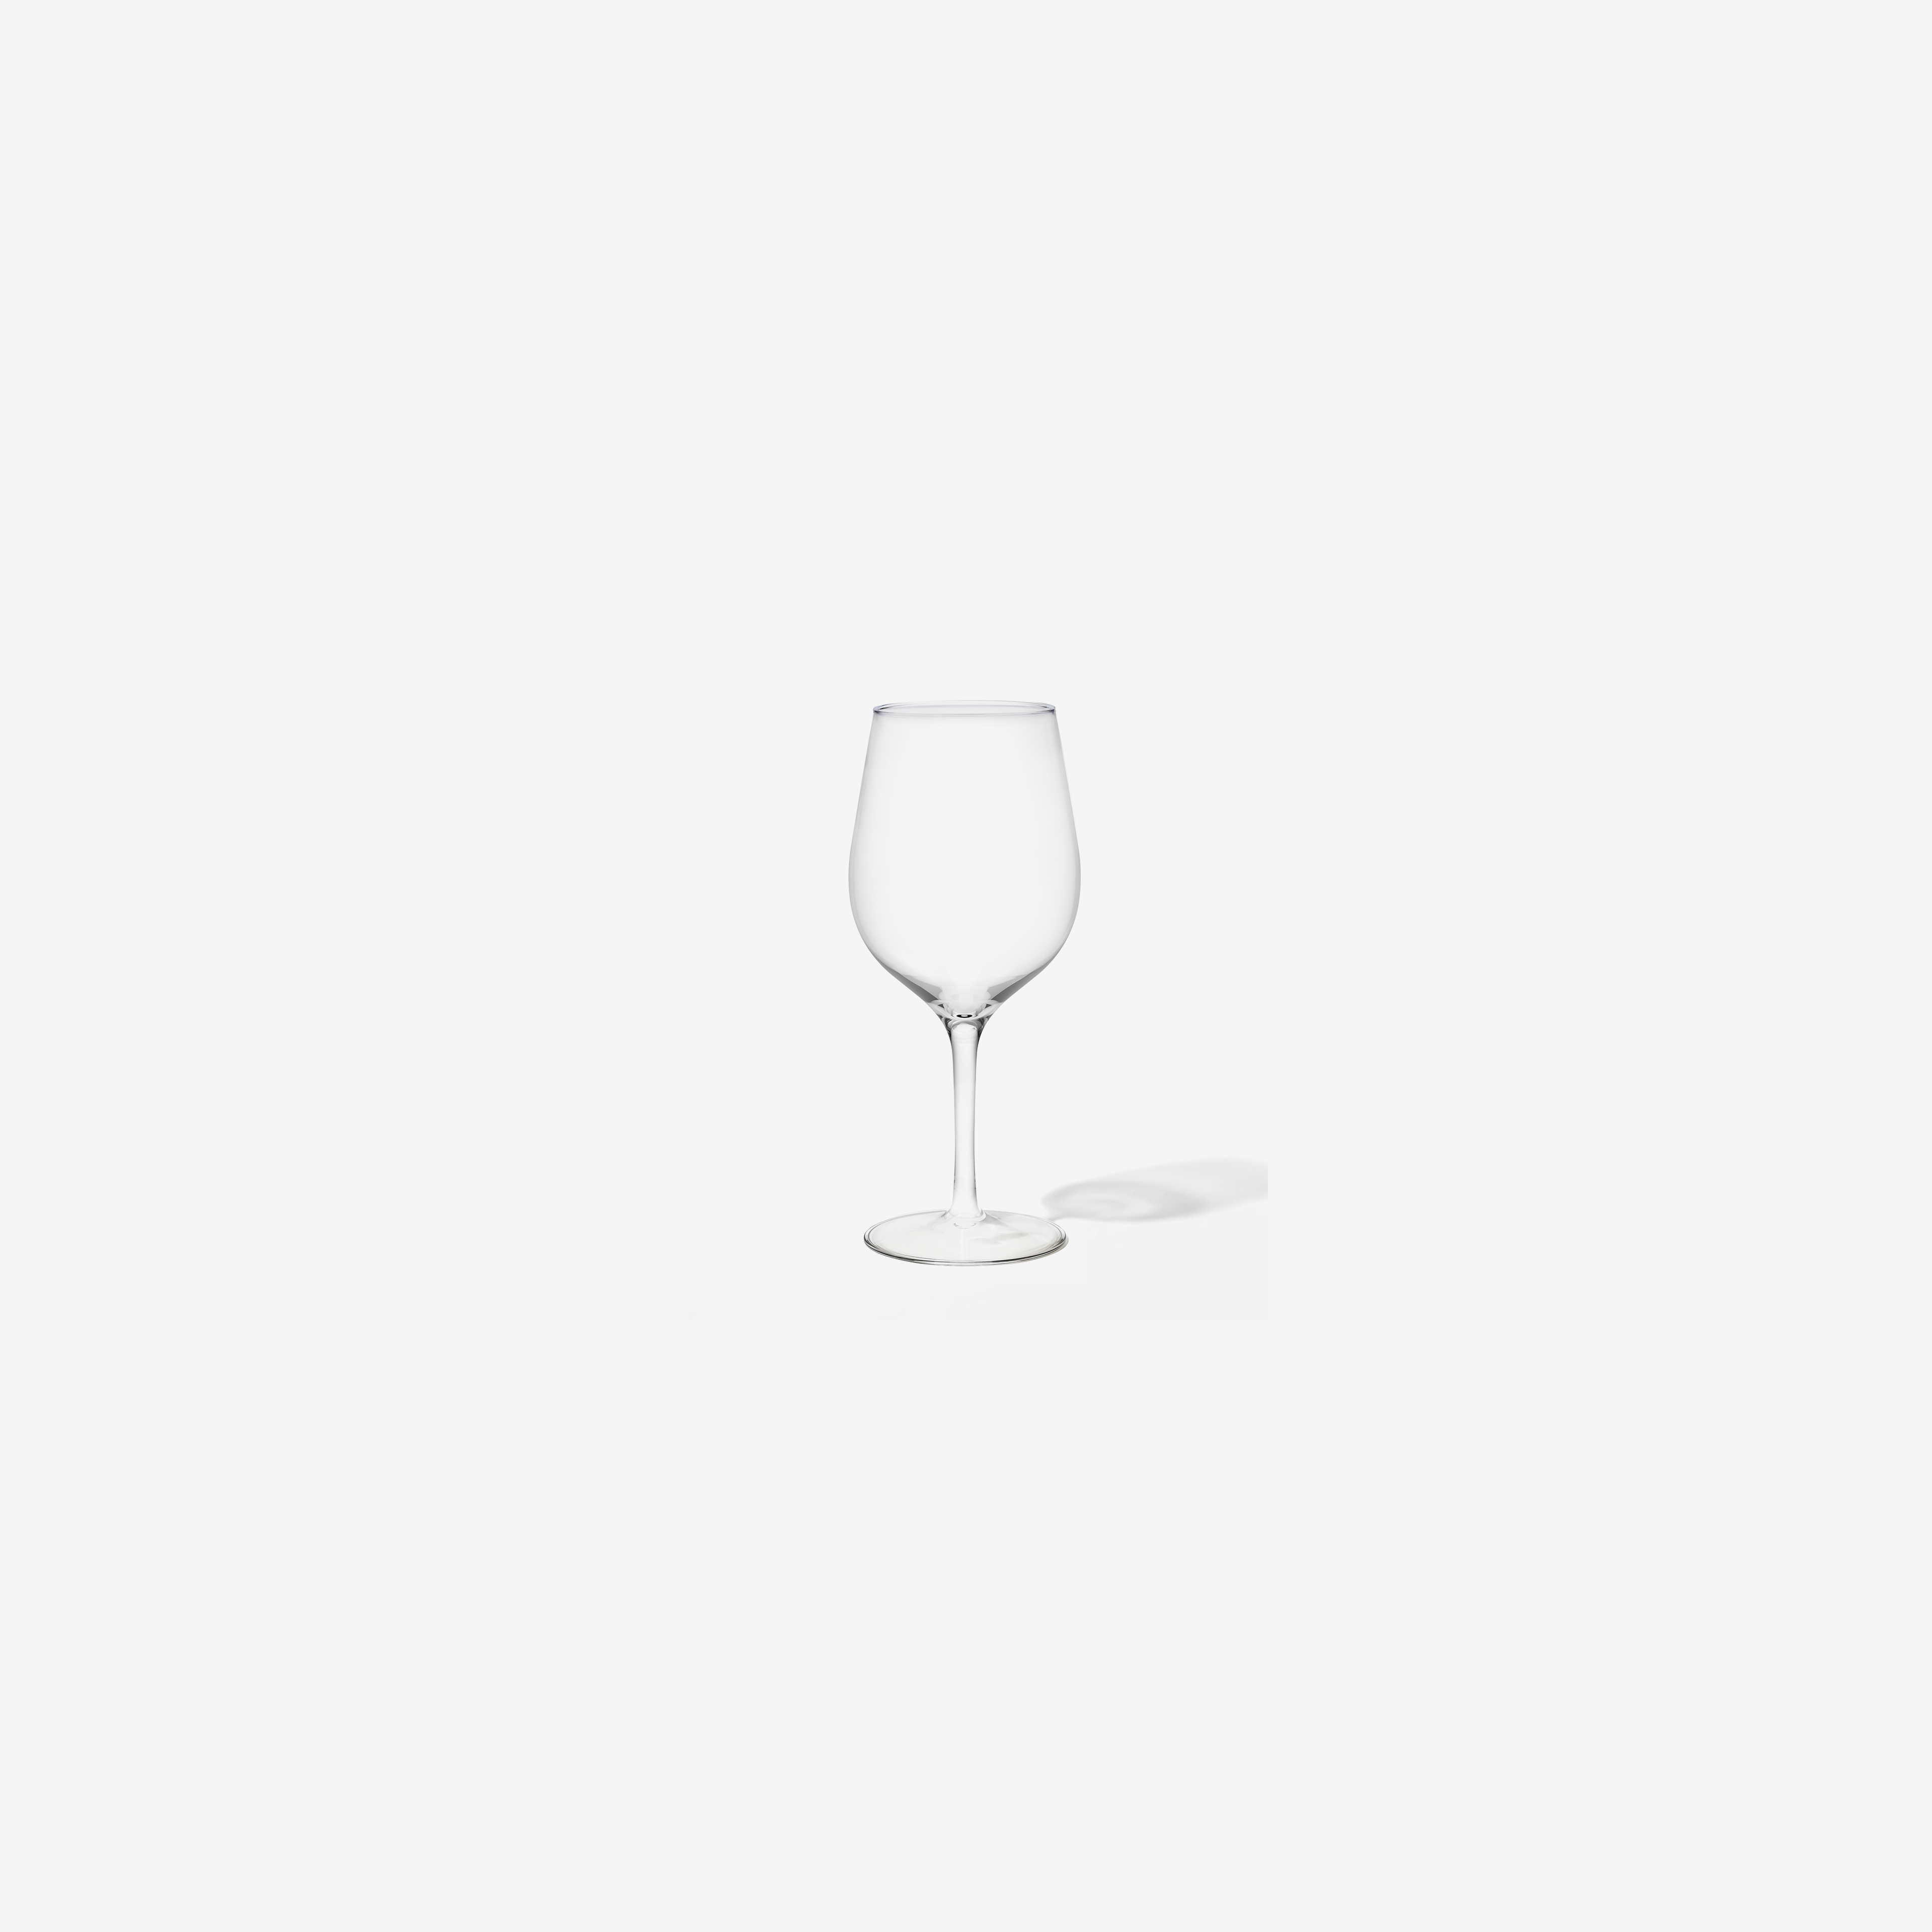 RESERVE 16oz Wine Tritan Copolyester Glass